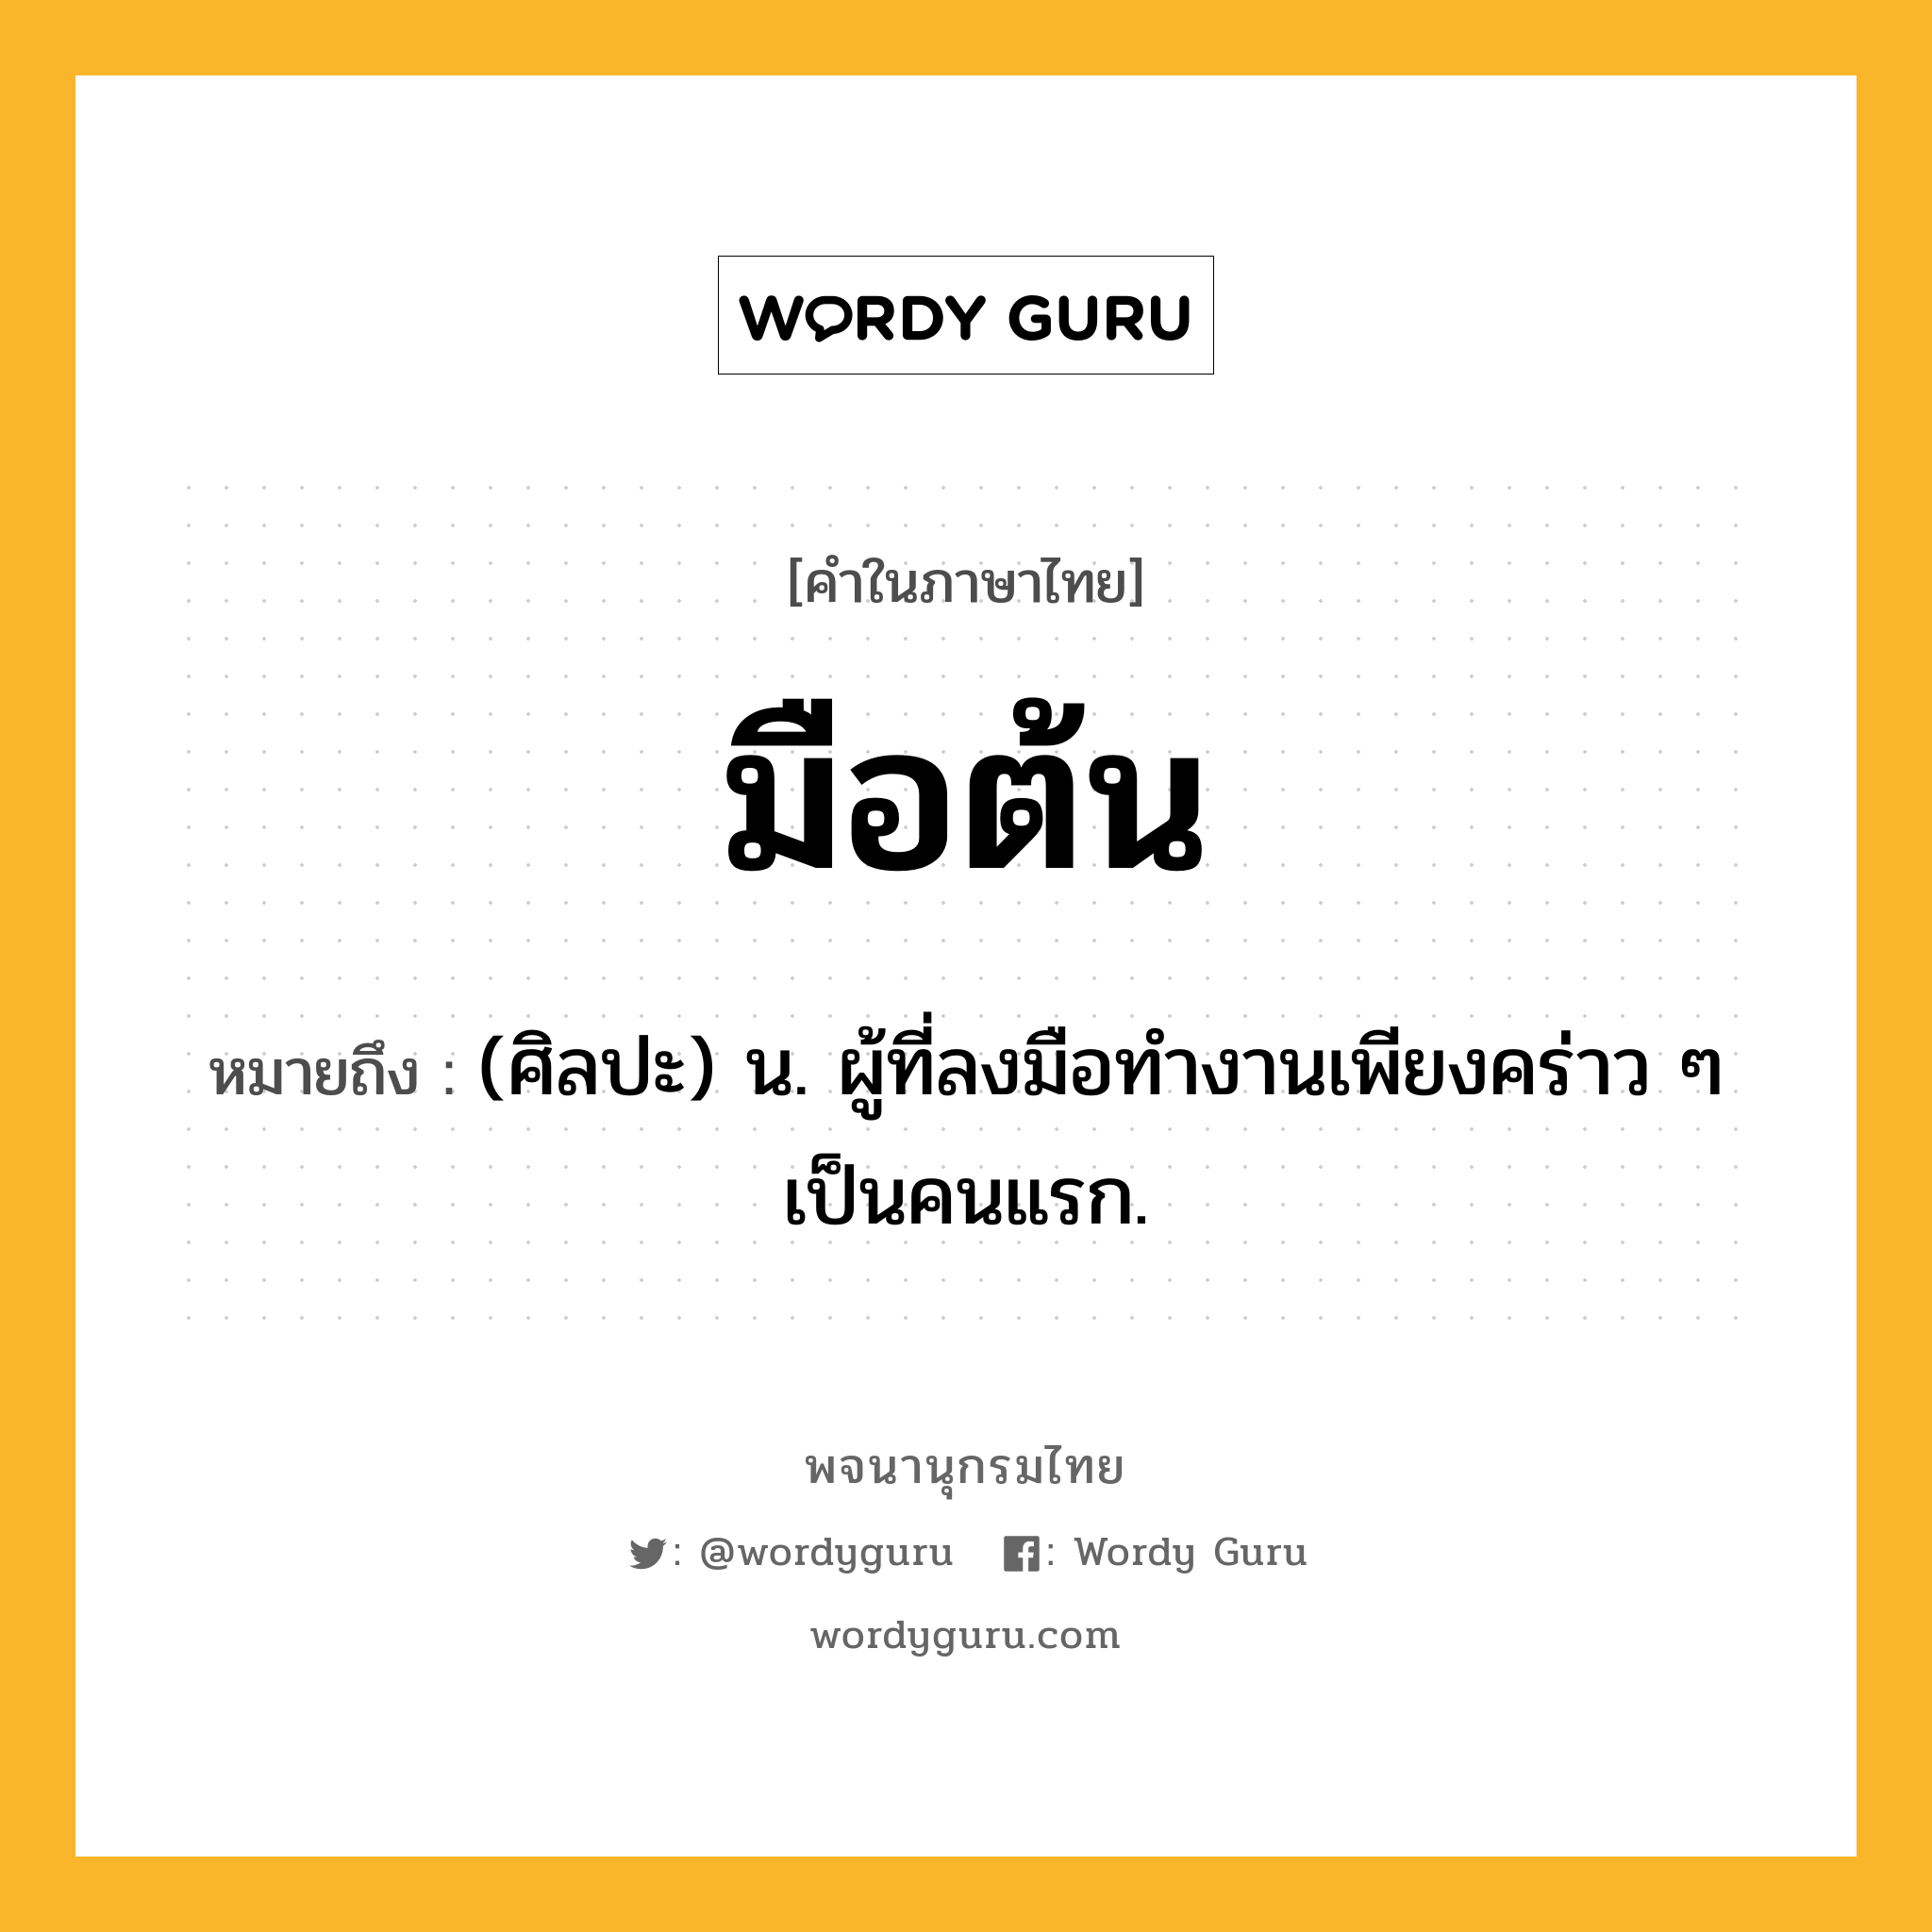 มือต้น ความหมาย หมายถึงอะไร?, คำในภาษาไทย มือต้น หมายถึง (ศิลปะ) น. ผู้ที่ลงมือทำงานเพียงคร่าว ๆ เป็นคนแรก.